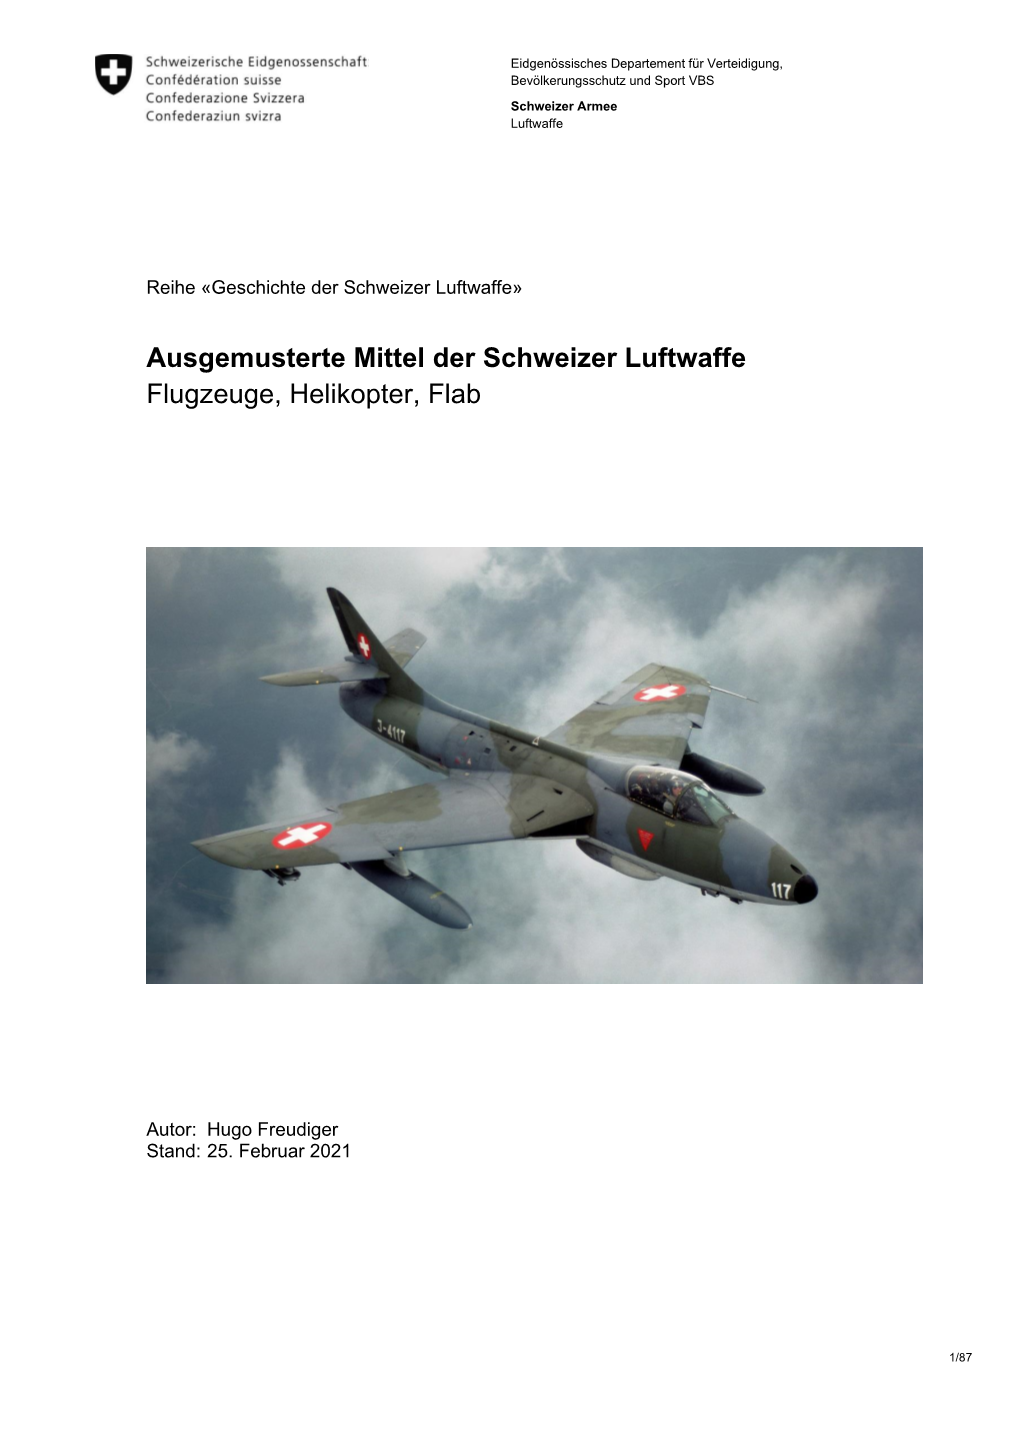 Ausgemusterte Mittel Der Schweizer Luftwaffe Flugzeuge, Helikopter, Flab